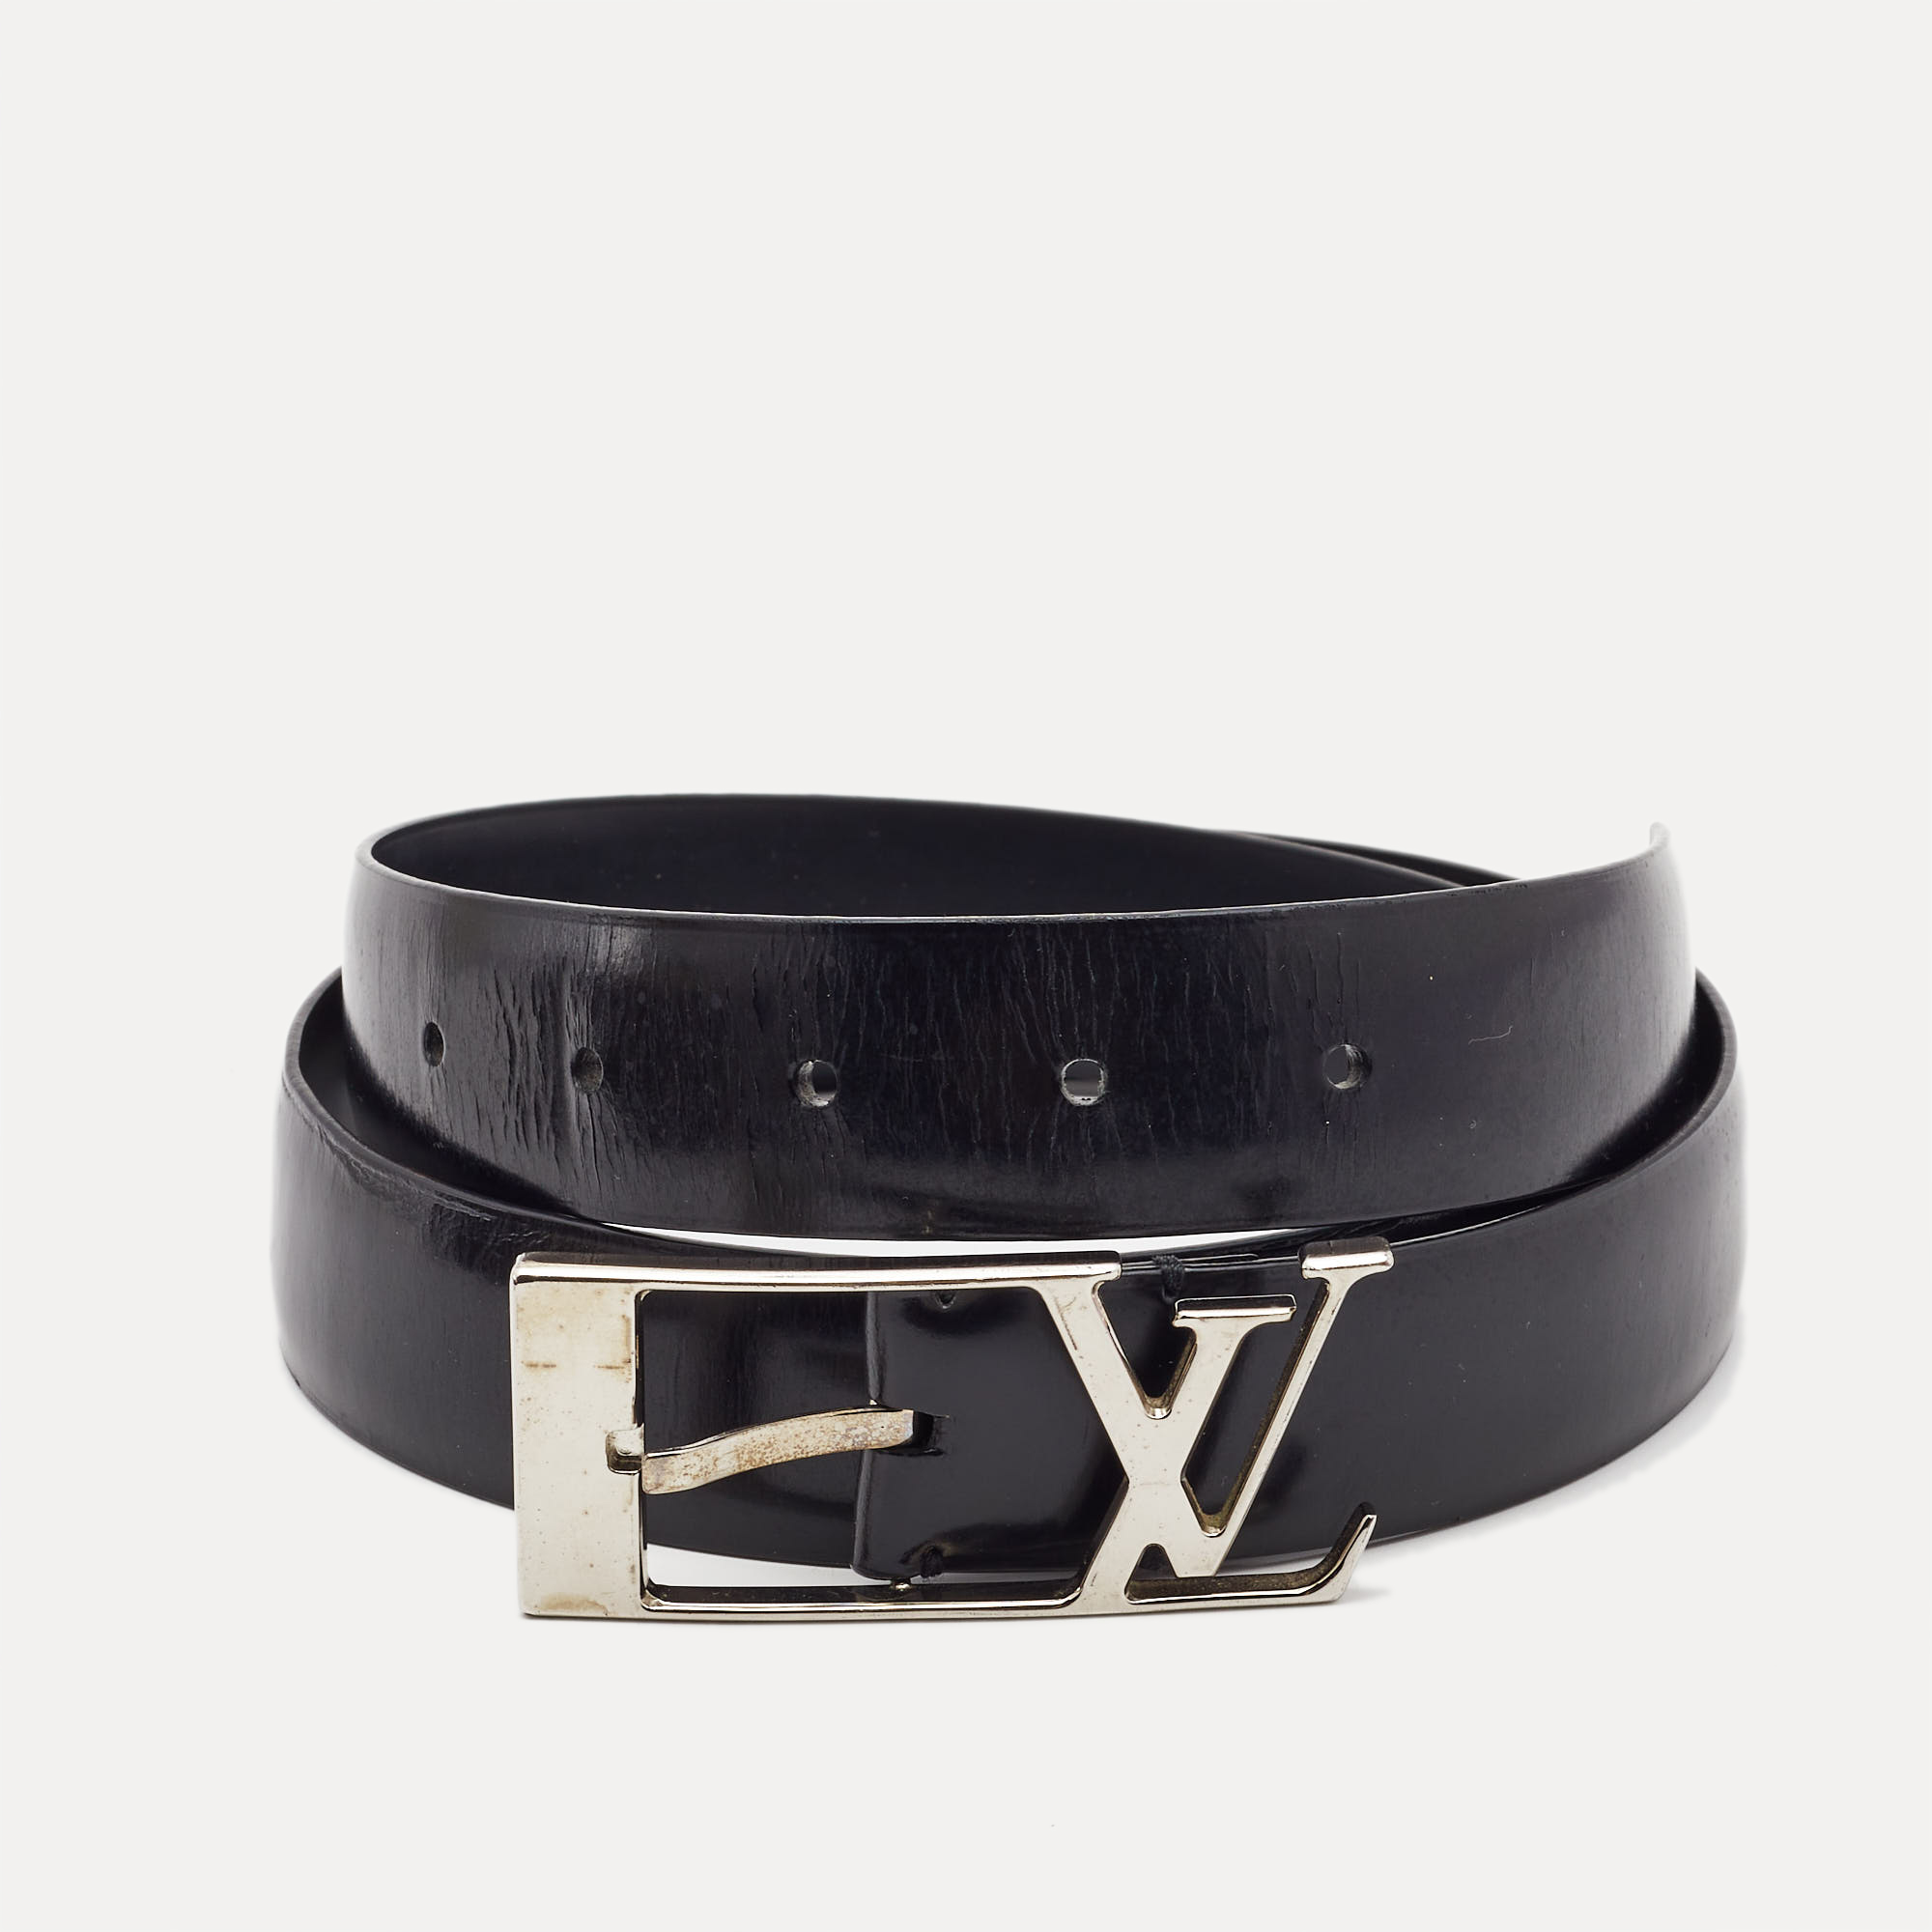 Authenticated Used Rare limited edition Louis Vuitton LOUIS VUITTON leather  belt N1002 Sunture LV 100LV 85 size 80-90cm black men's 